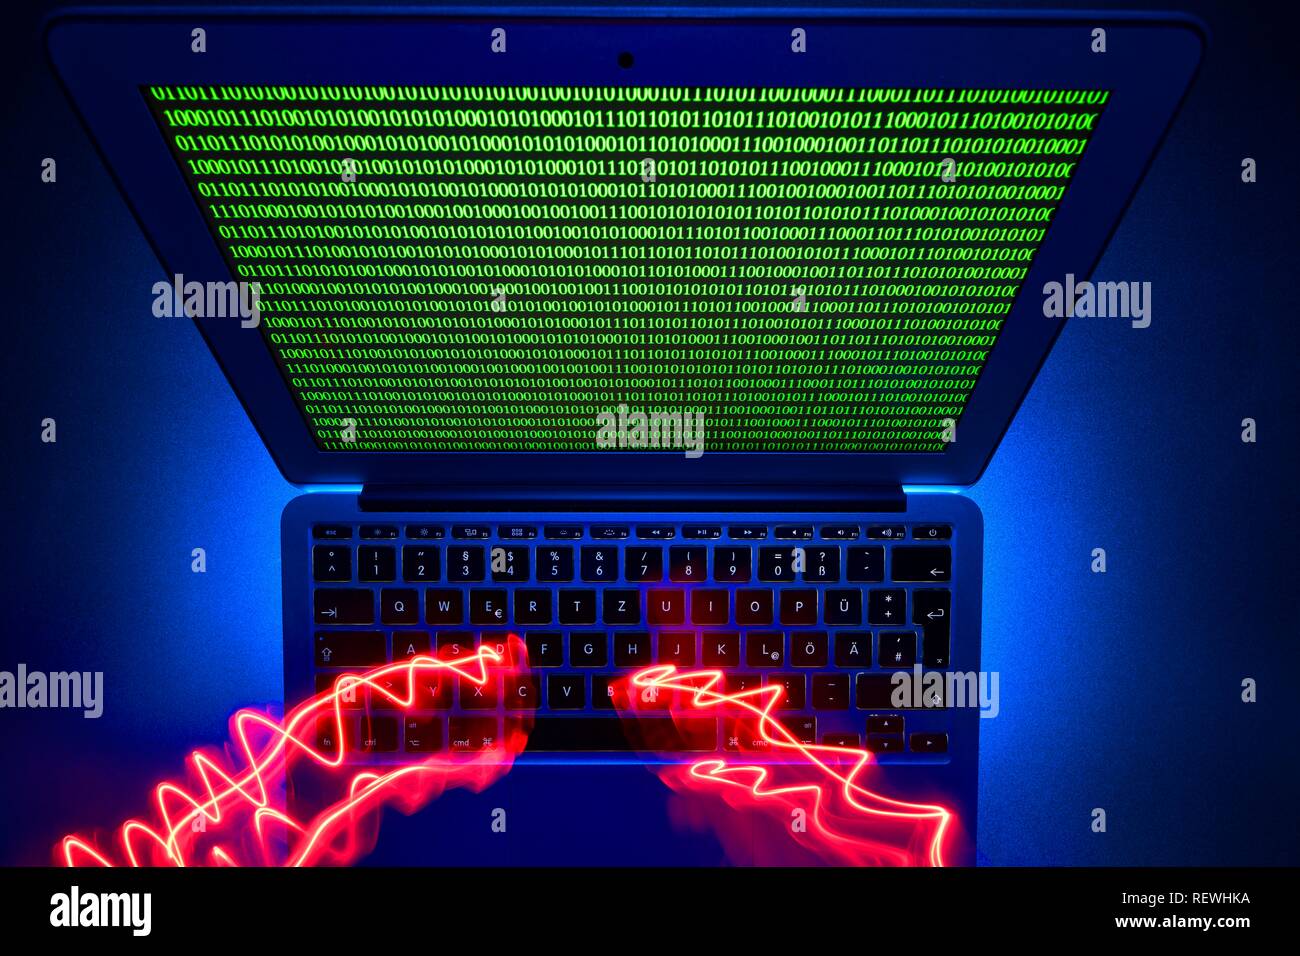 Rastros de la luz sobre el teclado del ordenador, la imagen símbolo de la ciberdelincuencia, delitos informáticos, protección de datos, Baden-Württemberg, Alemania Foto de stock